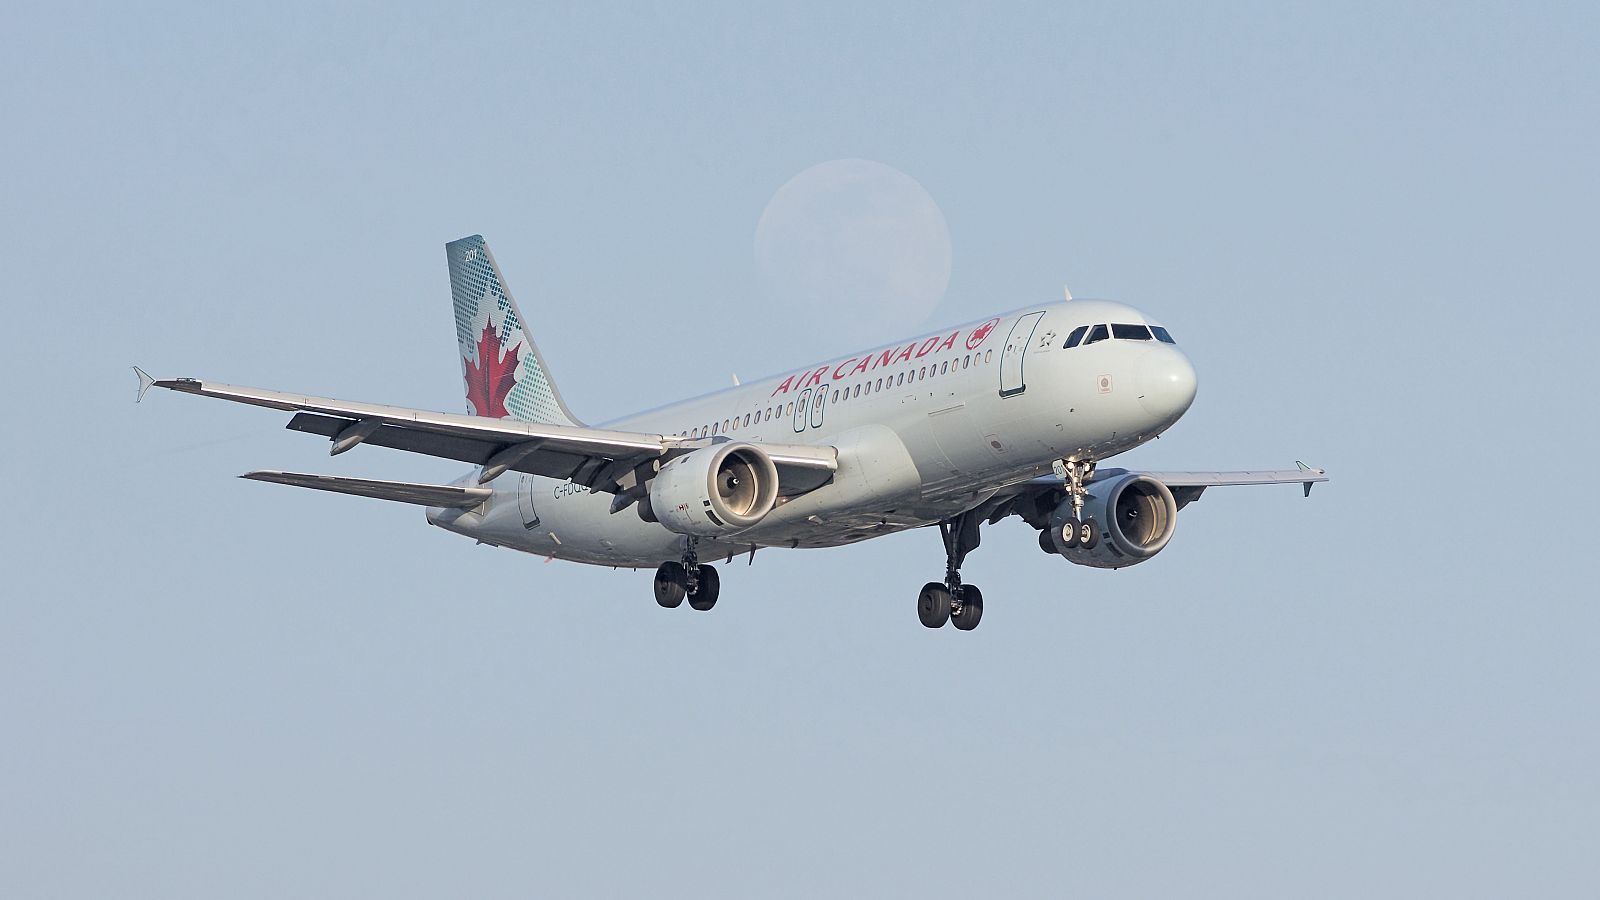 El SEPLA, sobre el avión de Air Canada: "Lo tienen absolutamente bajo control, están buscando tener el peso adecuado para aterrizar" - RTVE.es